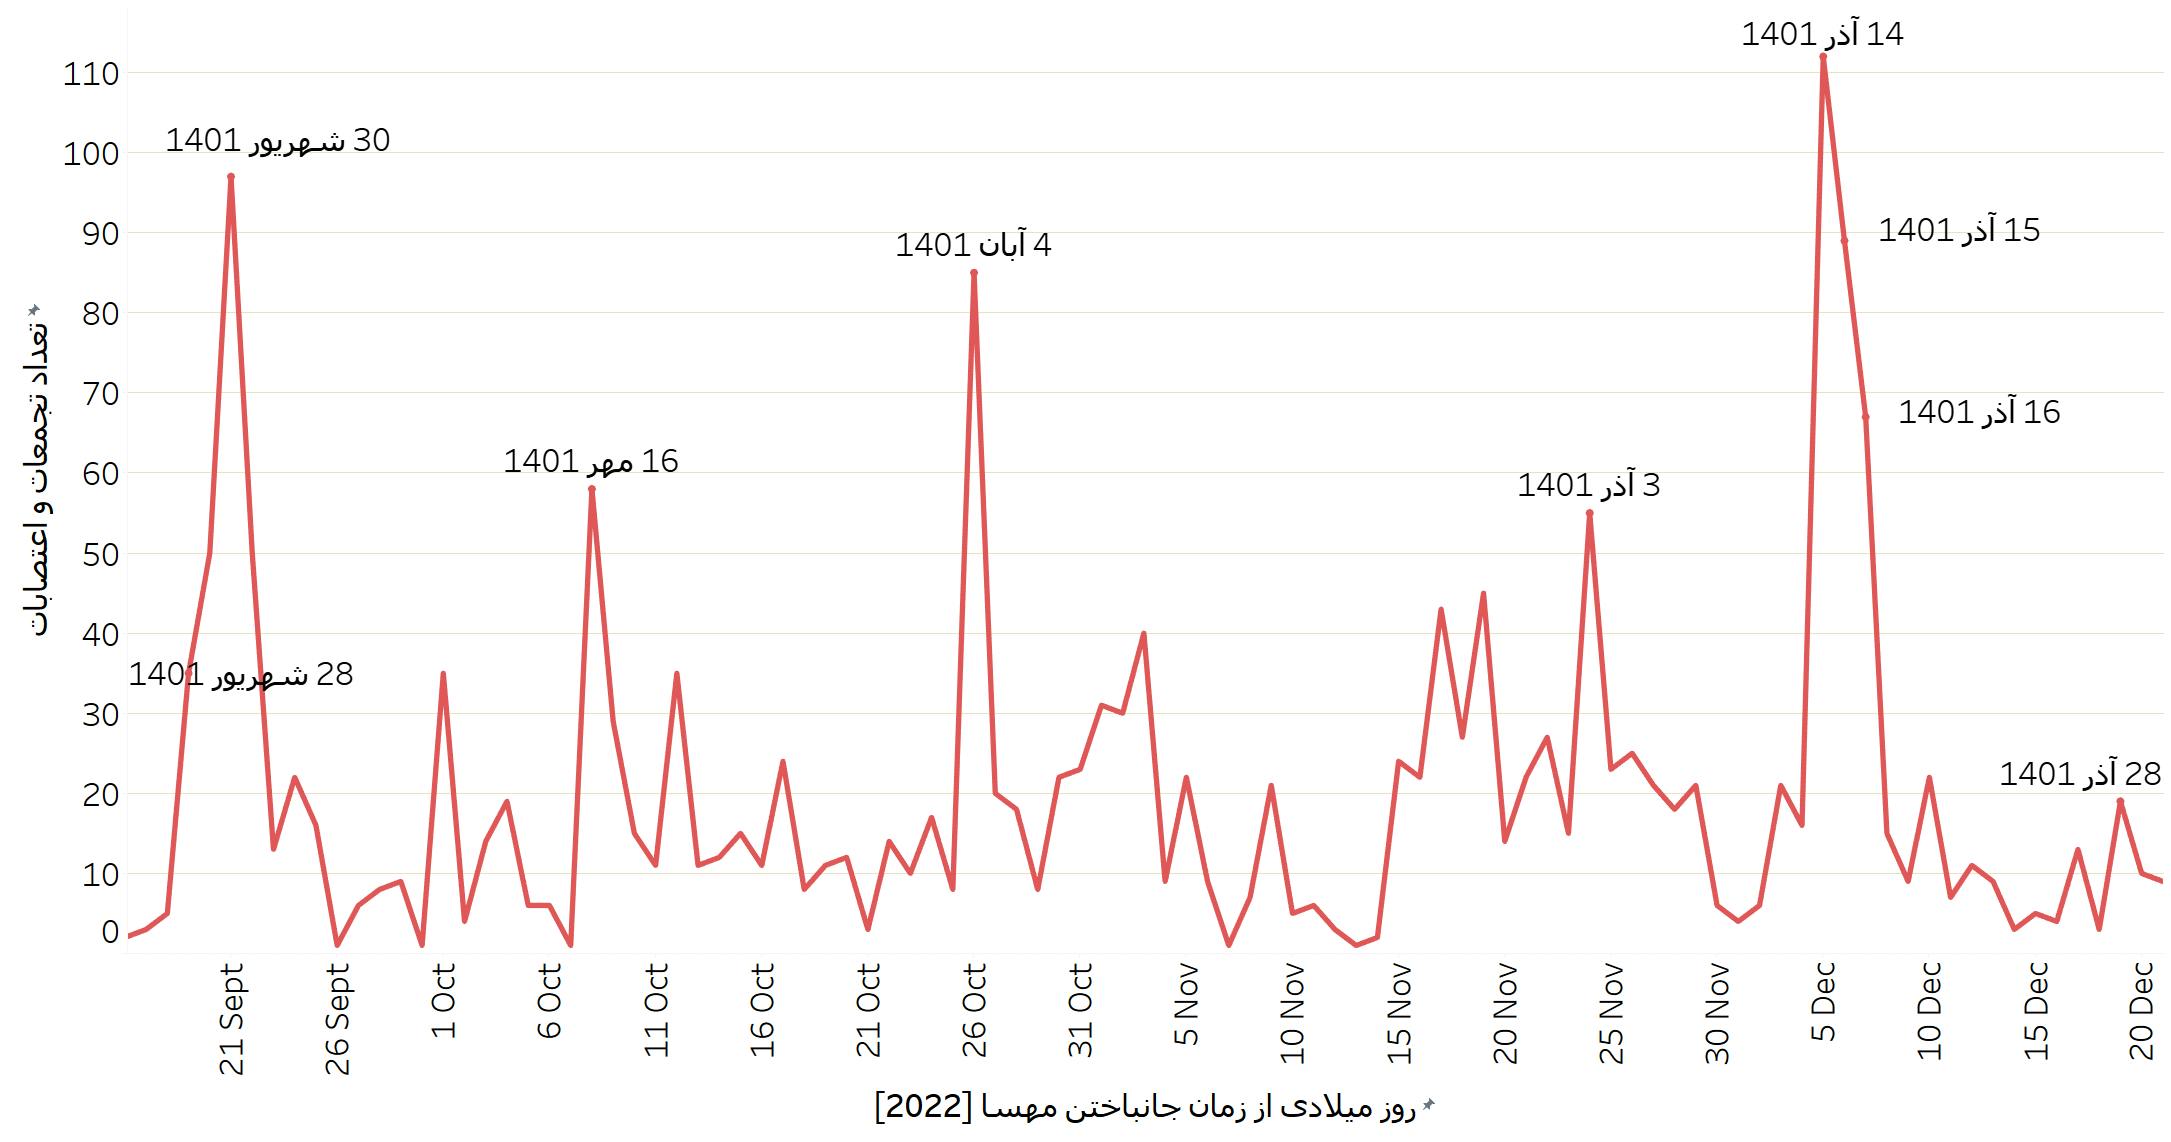 نمودار شماره یک: تعداد کل تجمعات و اعتصابات از زمان قتل مهسا (ژینا) امینی